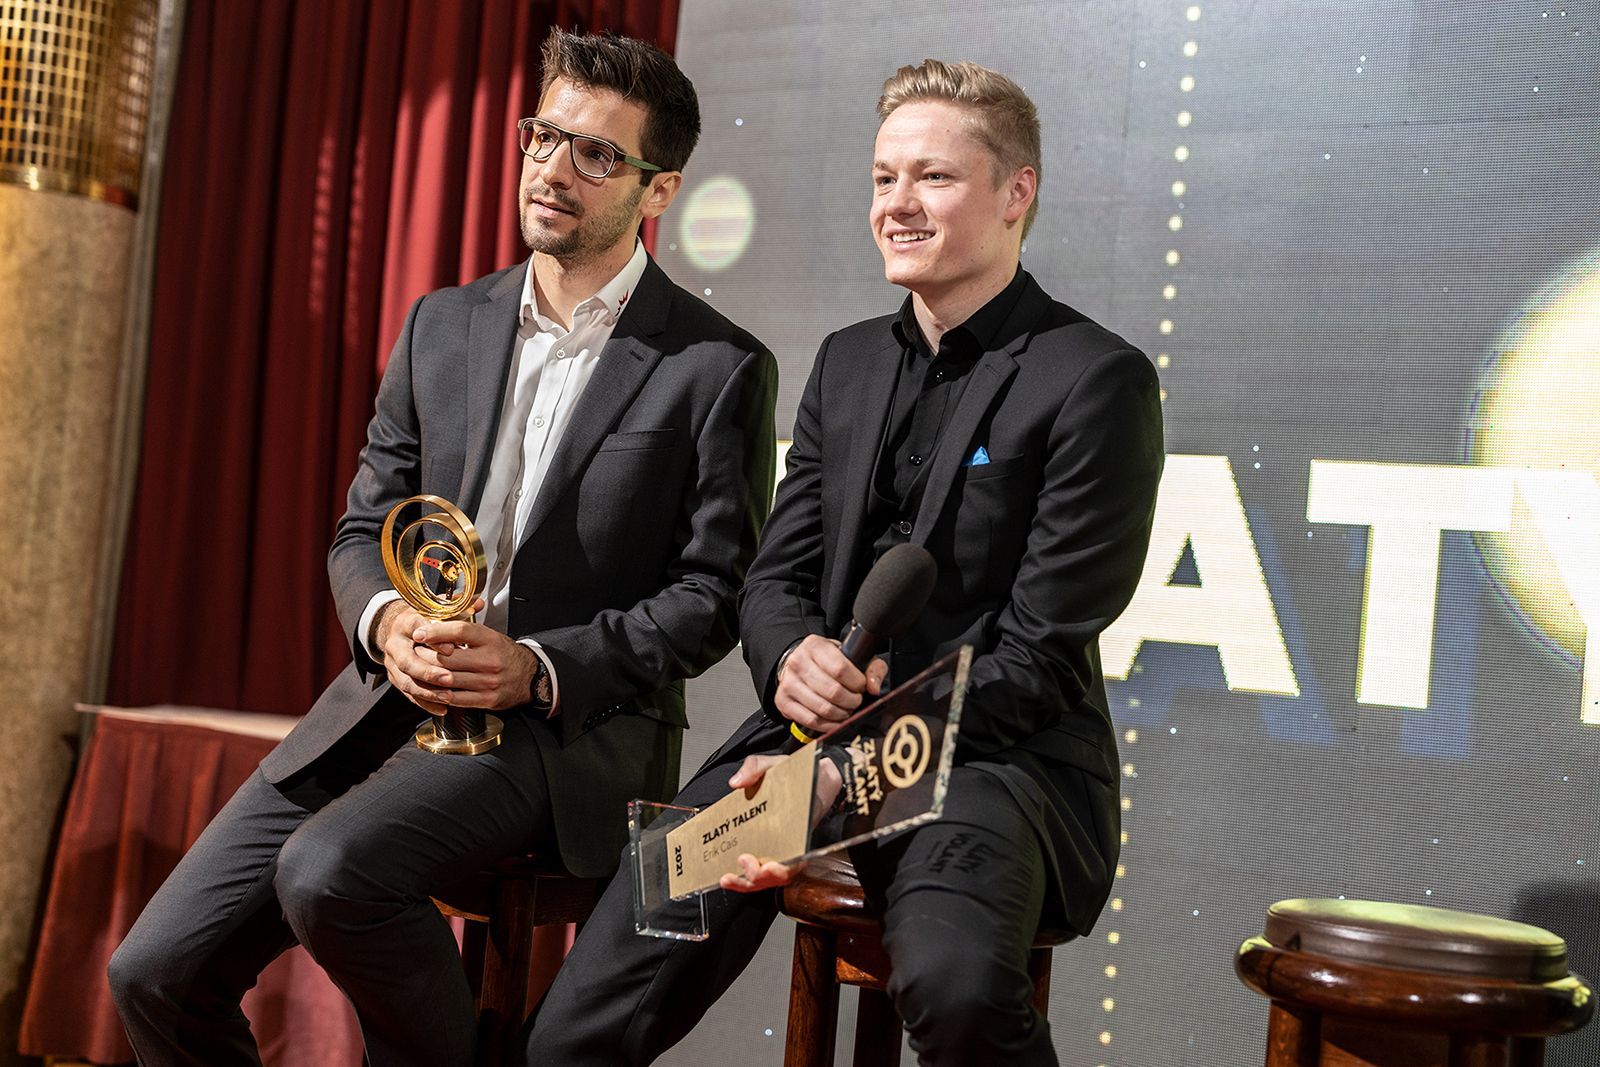 Martin Macík mladší se Zlatým volantem a Erik Cais s trofejí pro nejlepšího nováčka roku 2021